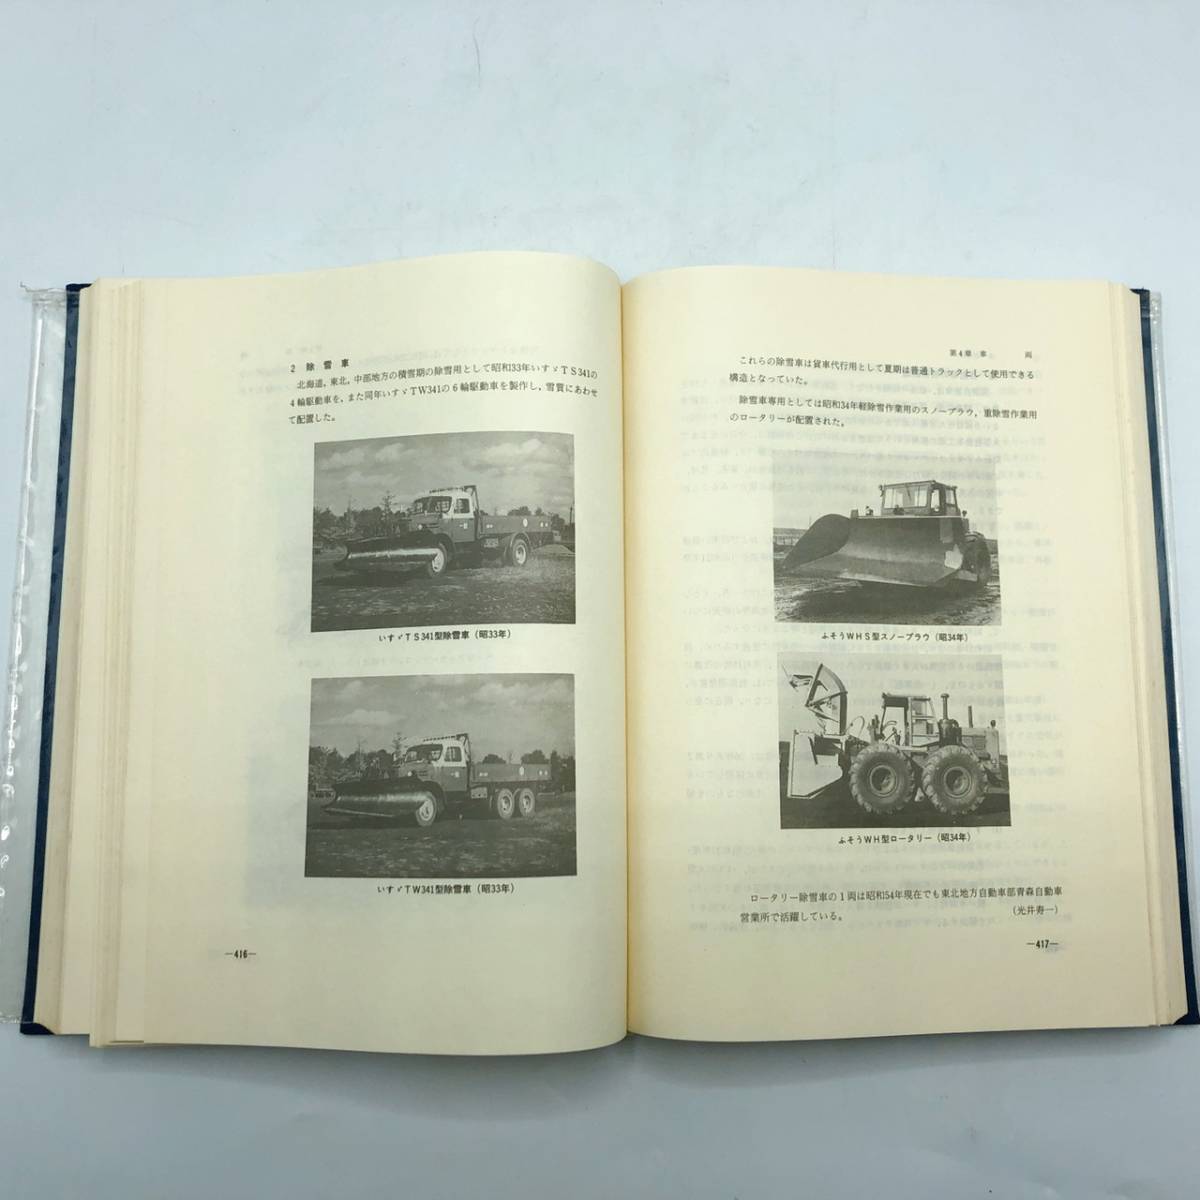 国鉄自動車五十年史 日本国有鉄道自動車局 国鉄バス 昭和55年12月発行 